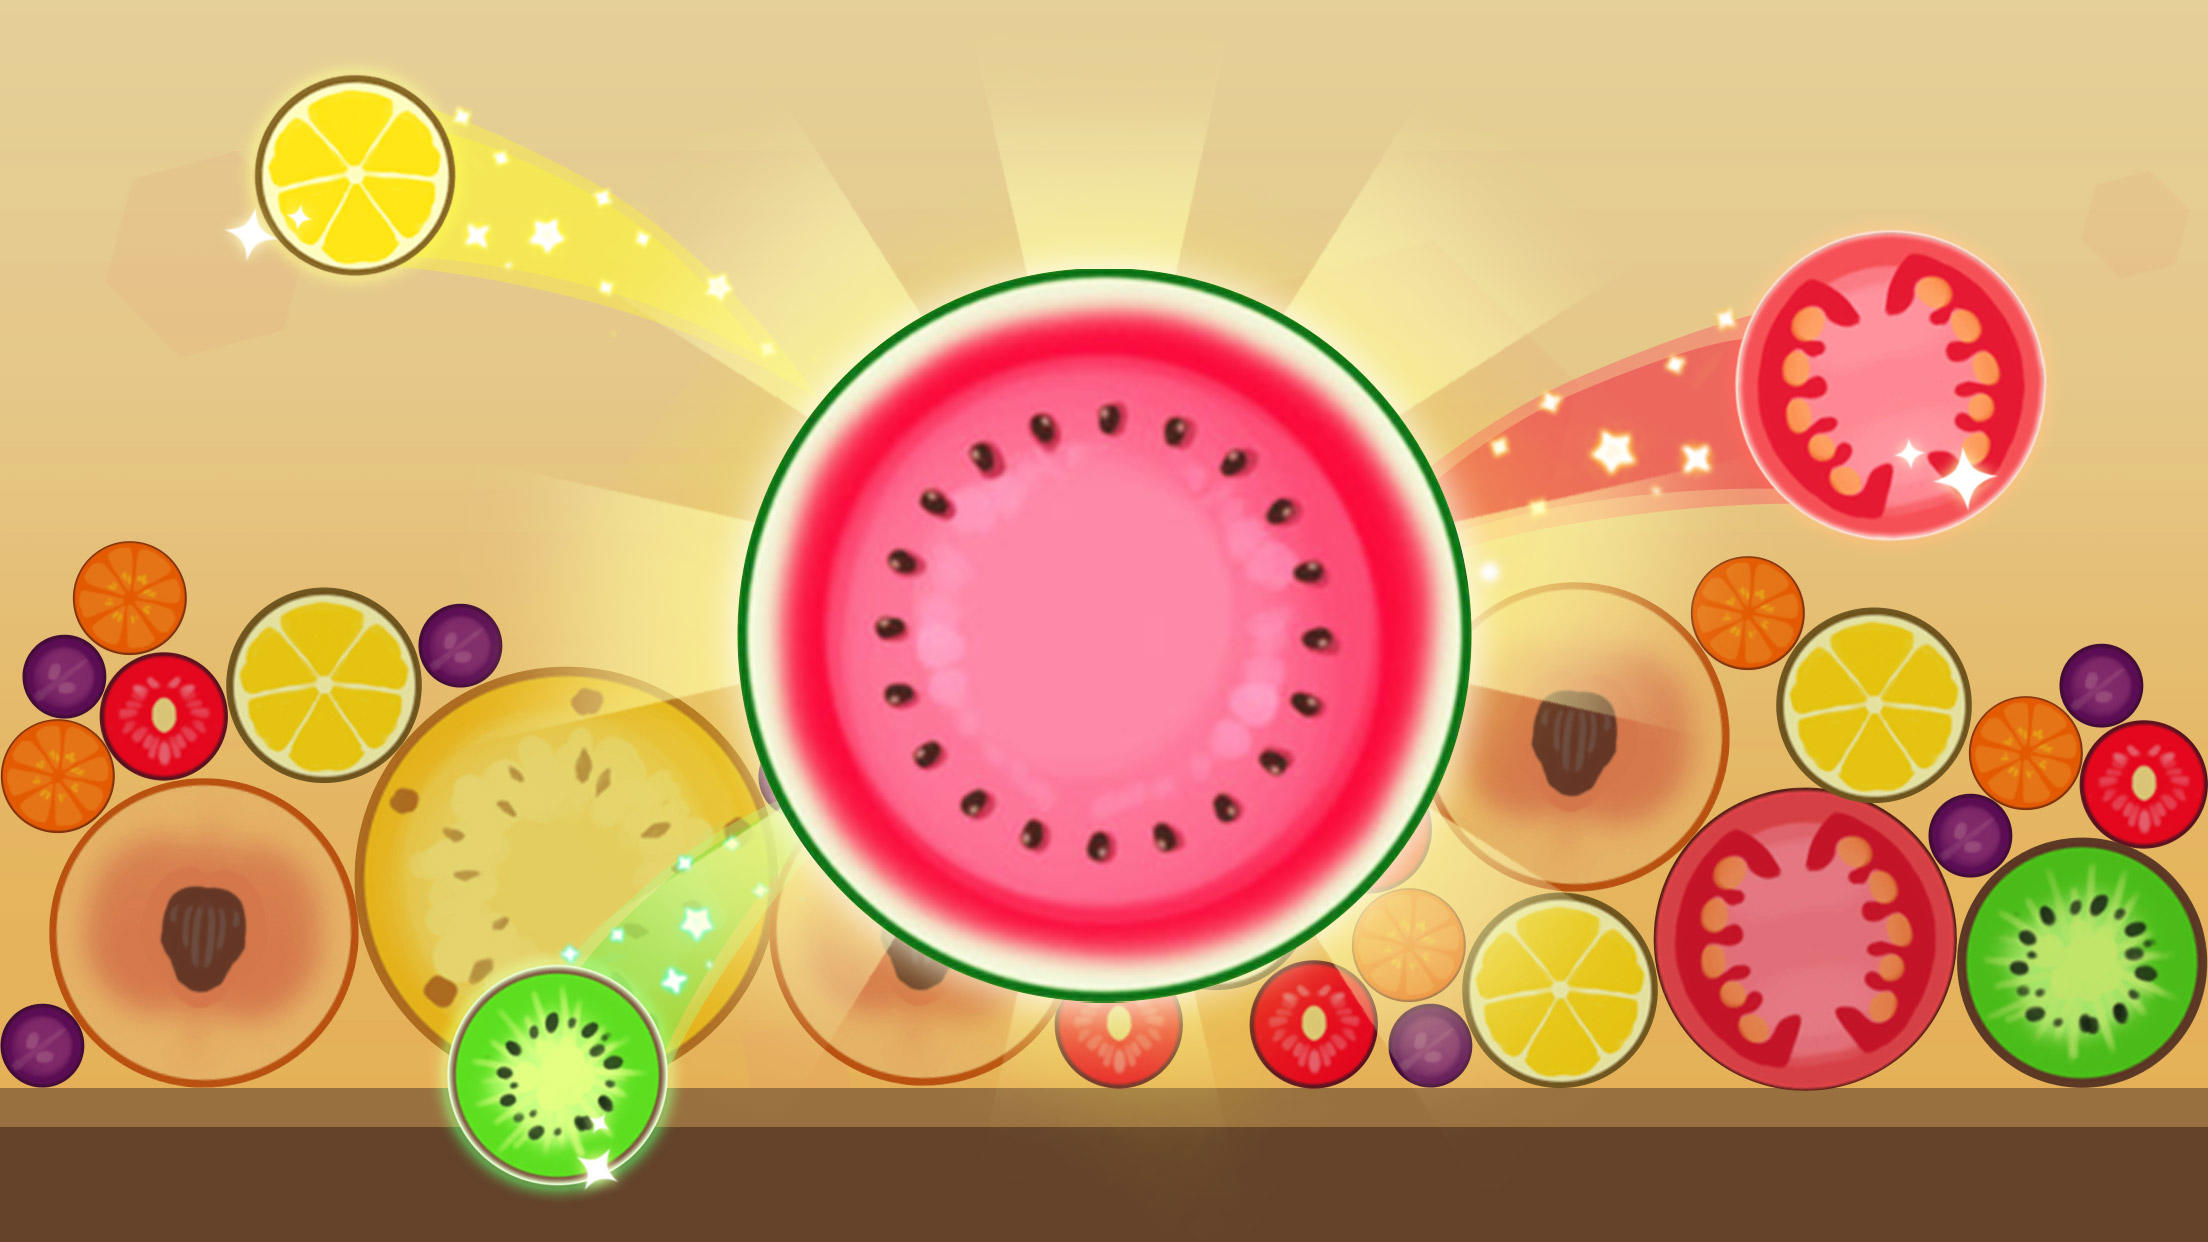 Screenshot 1 of Объединяй фрукты - Объединяй арбуз! Бесплатная игра-головоломка 2.0